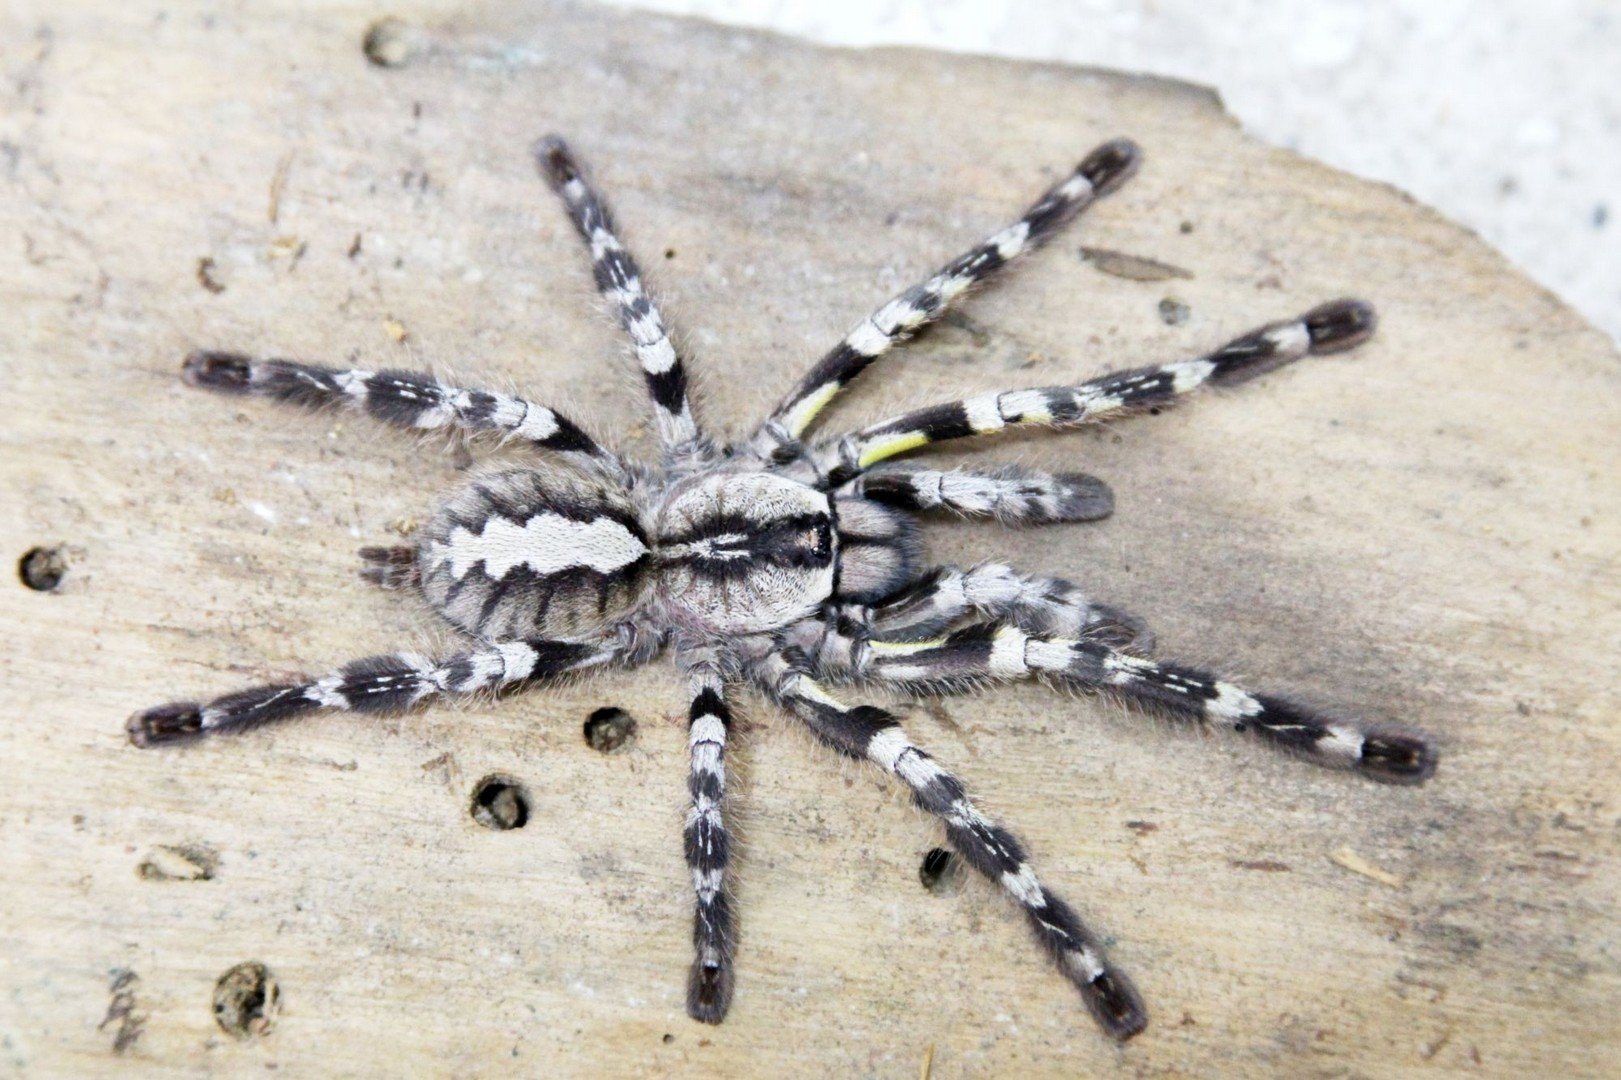 Жалят смертельно: ученый рассказала об опасных видах пауков Волгоградской области